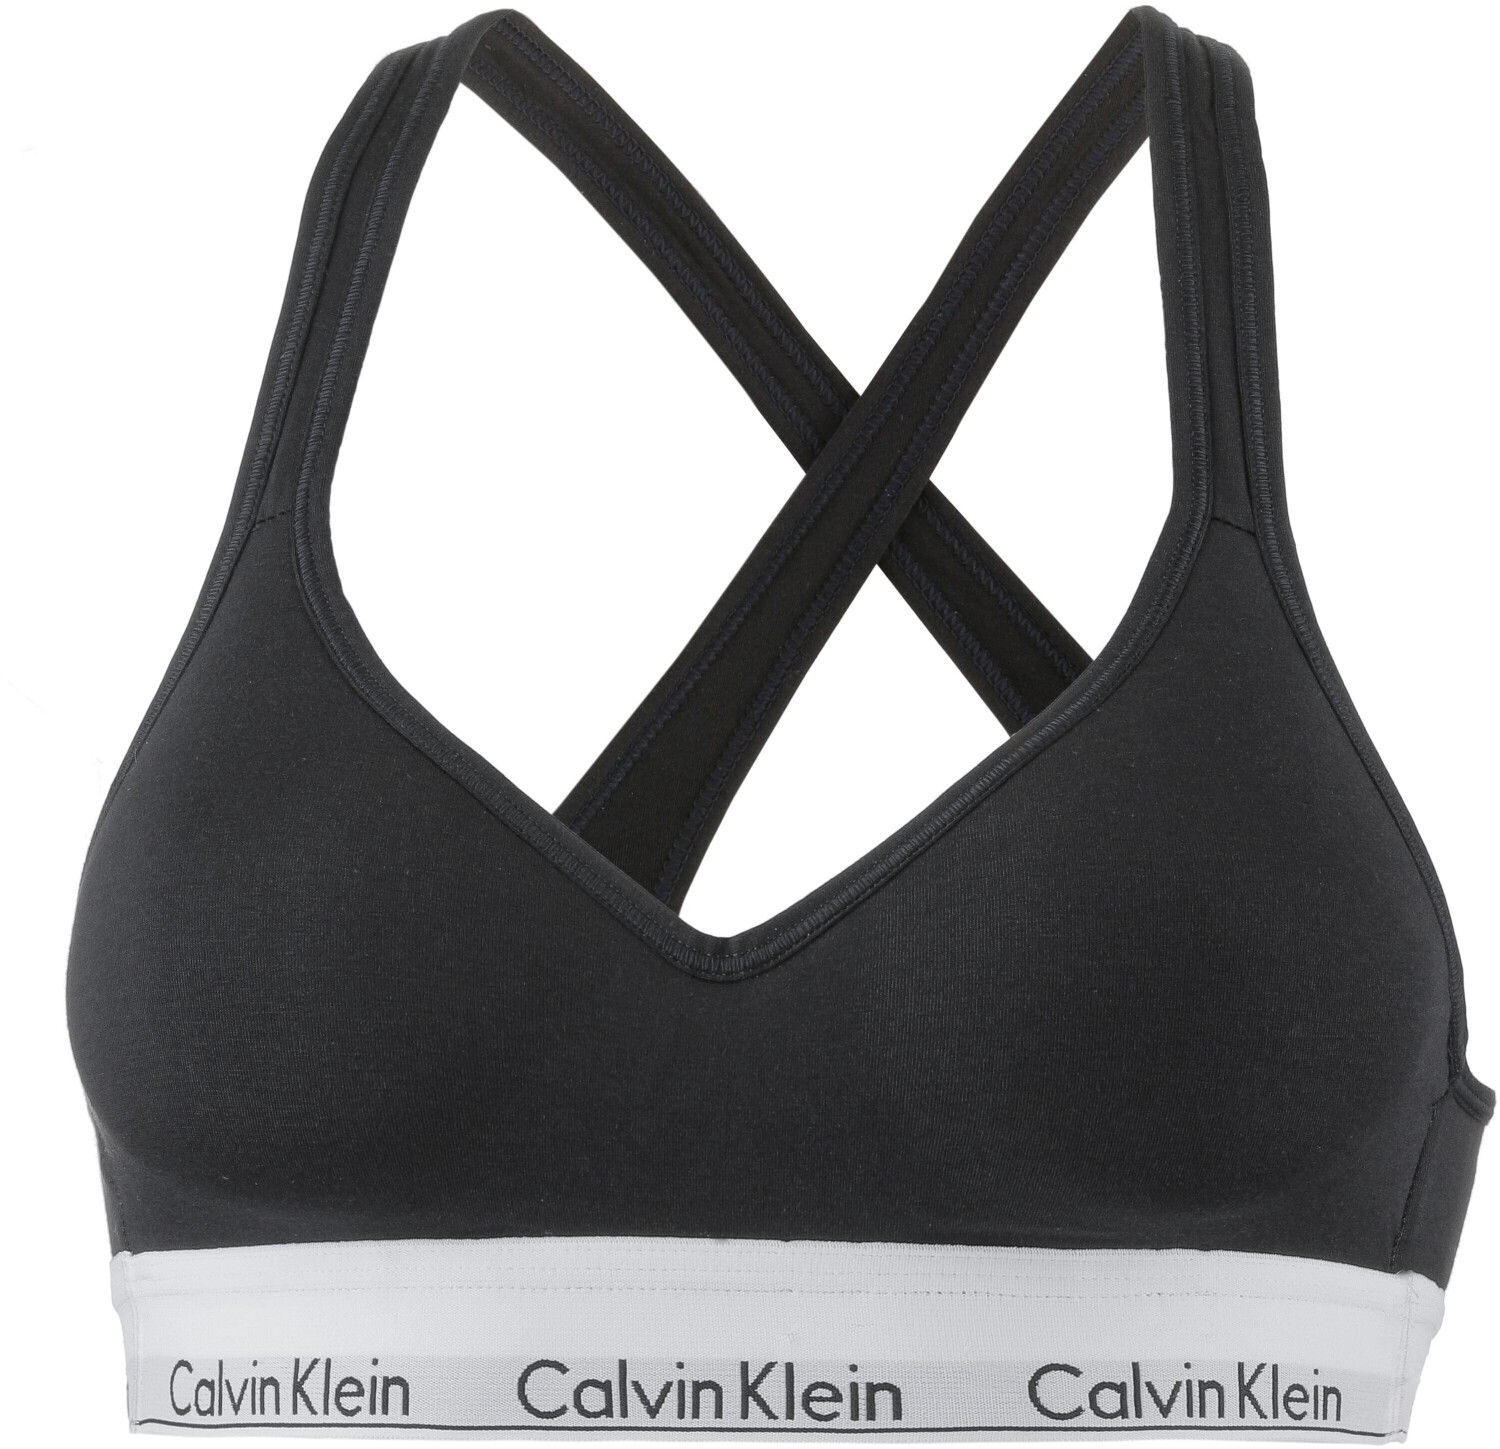 Calvin Klein Underwear MODERN LIFT - Bustier - grey/grau-meliert